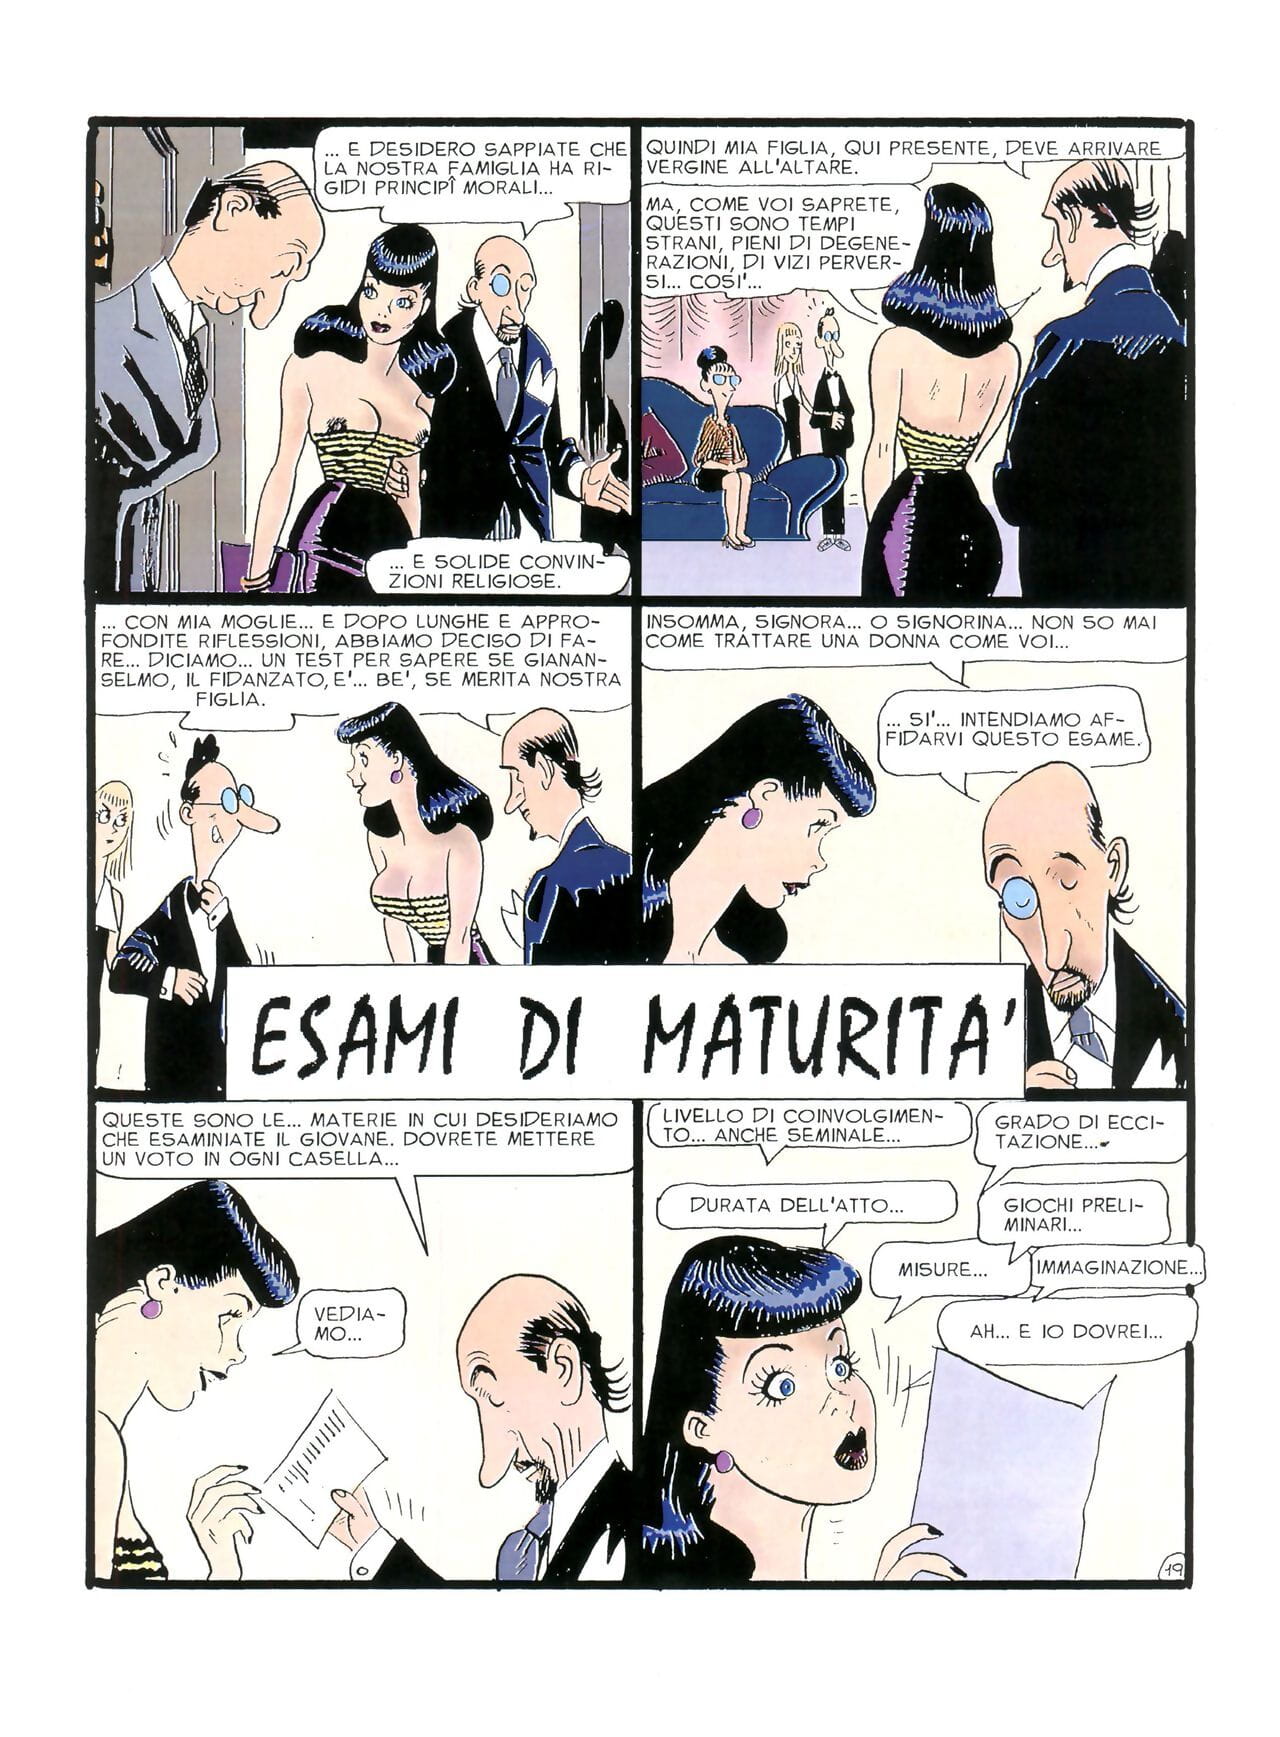 Chiara Di noc #1 page 1